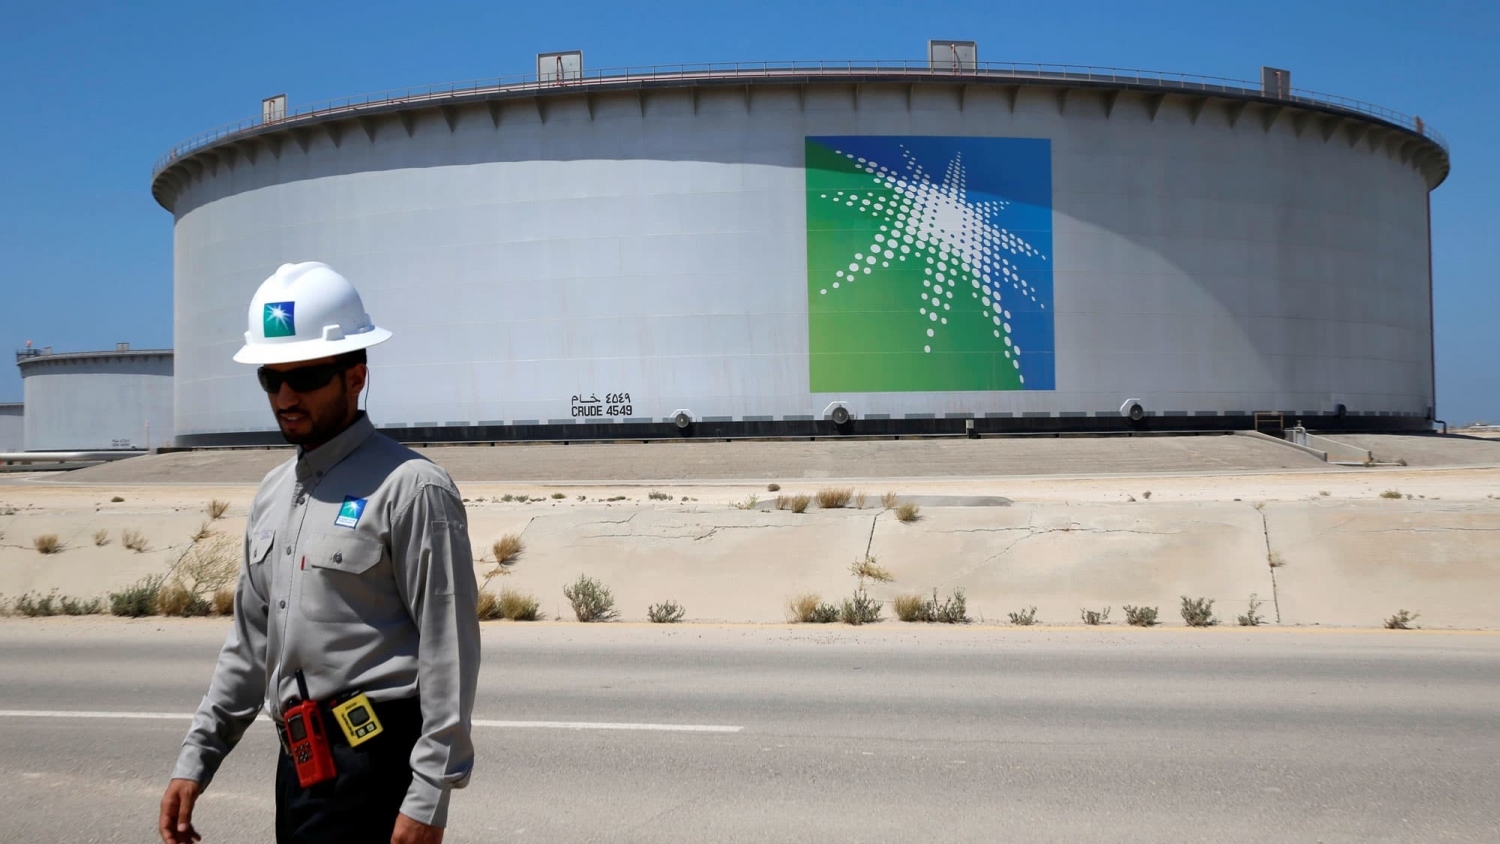 Ả Rập Xê-út tăng giá bán dầu sang châu Á và châu Âu vào tháng 4